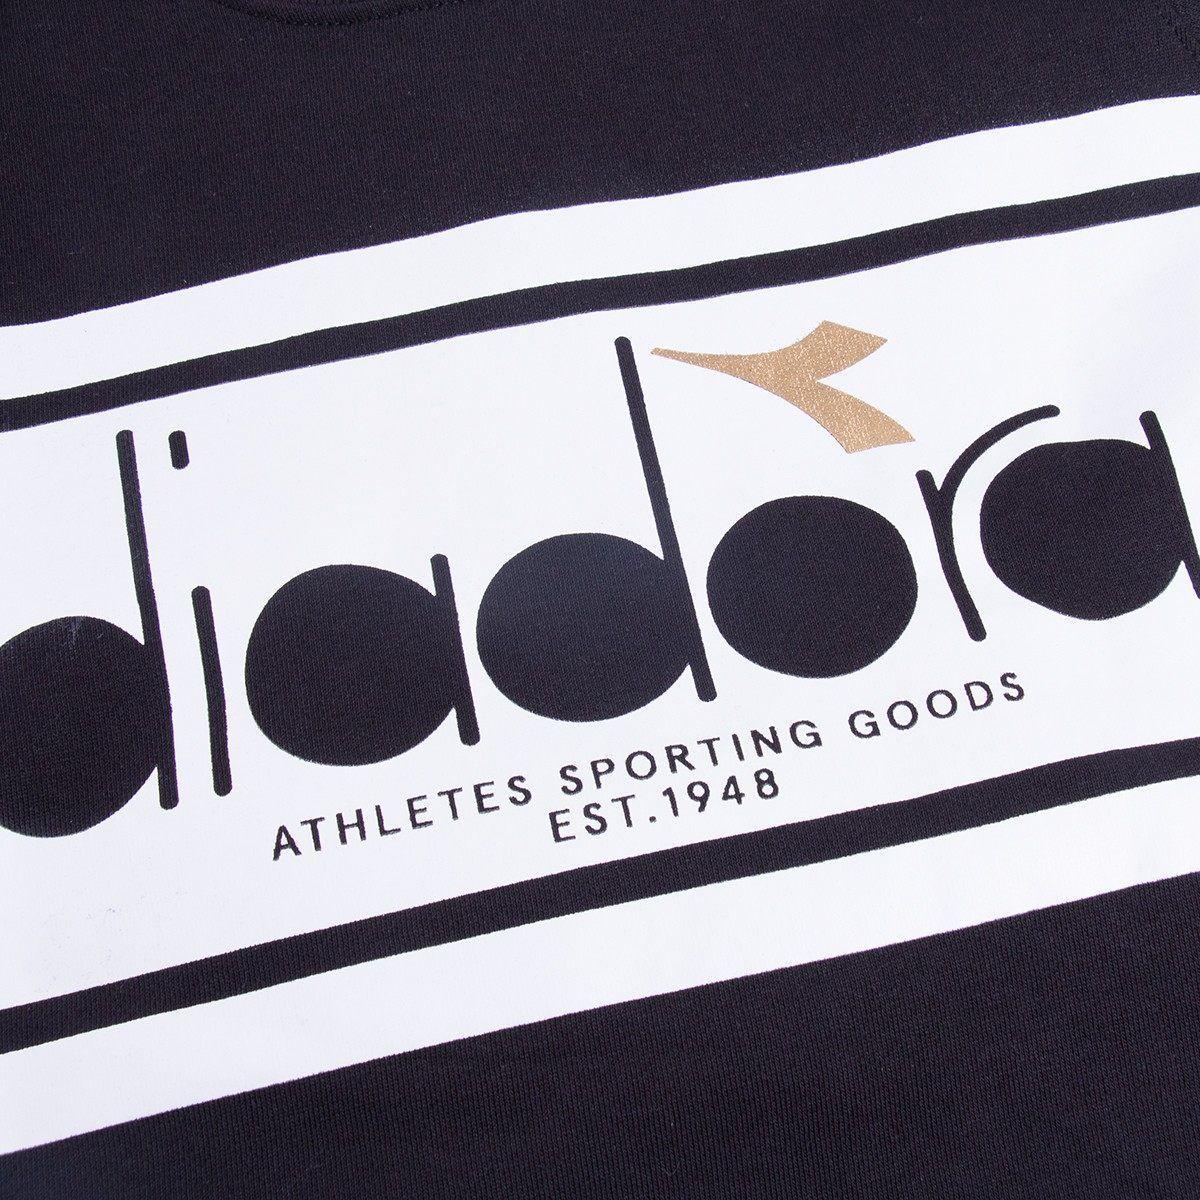 Five Ball Diadora Logo - Diadora Spectra Crew Sweatshirt Black White